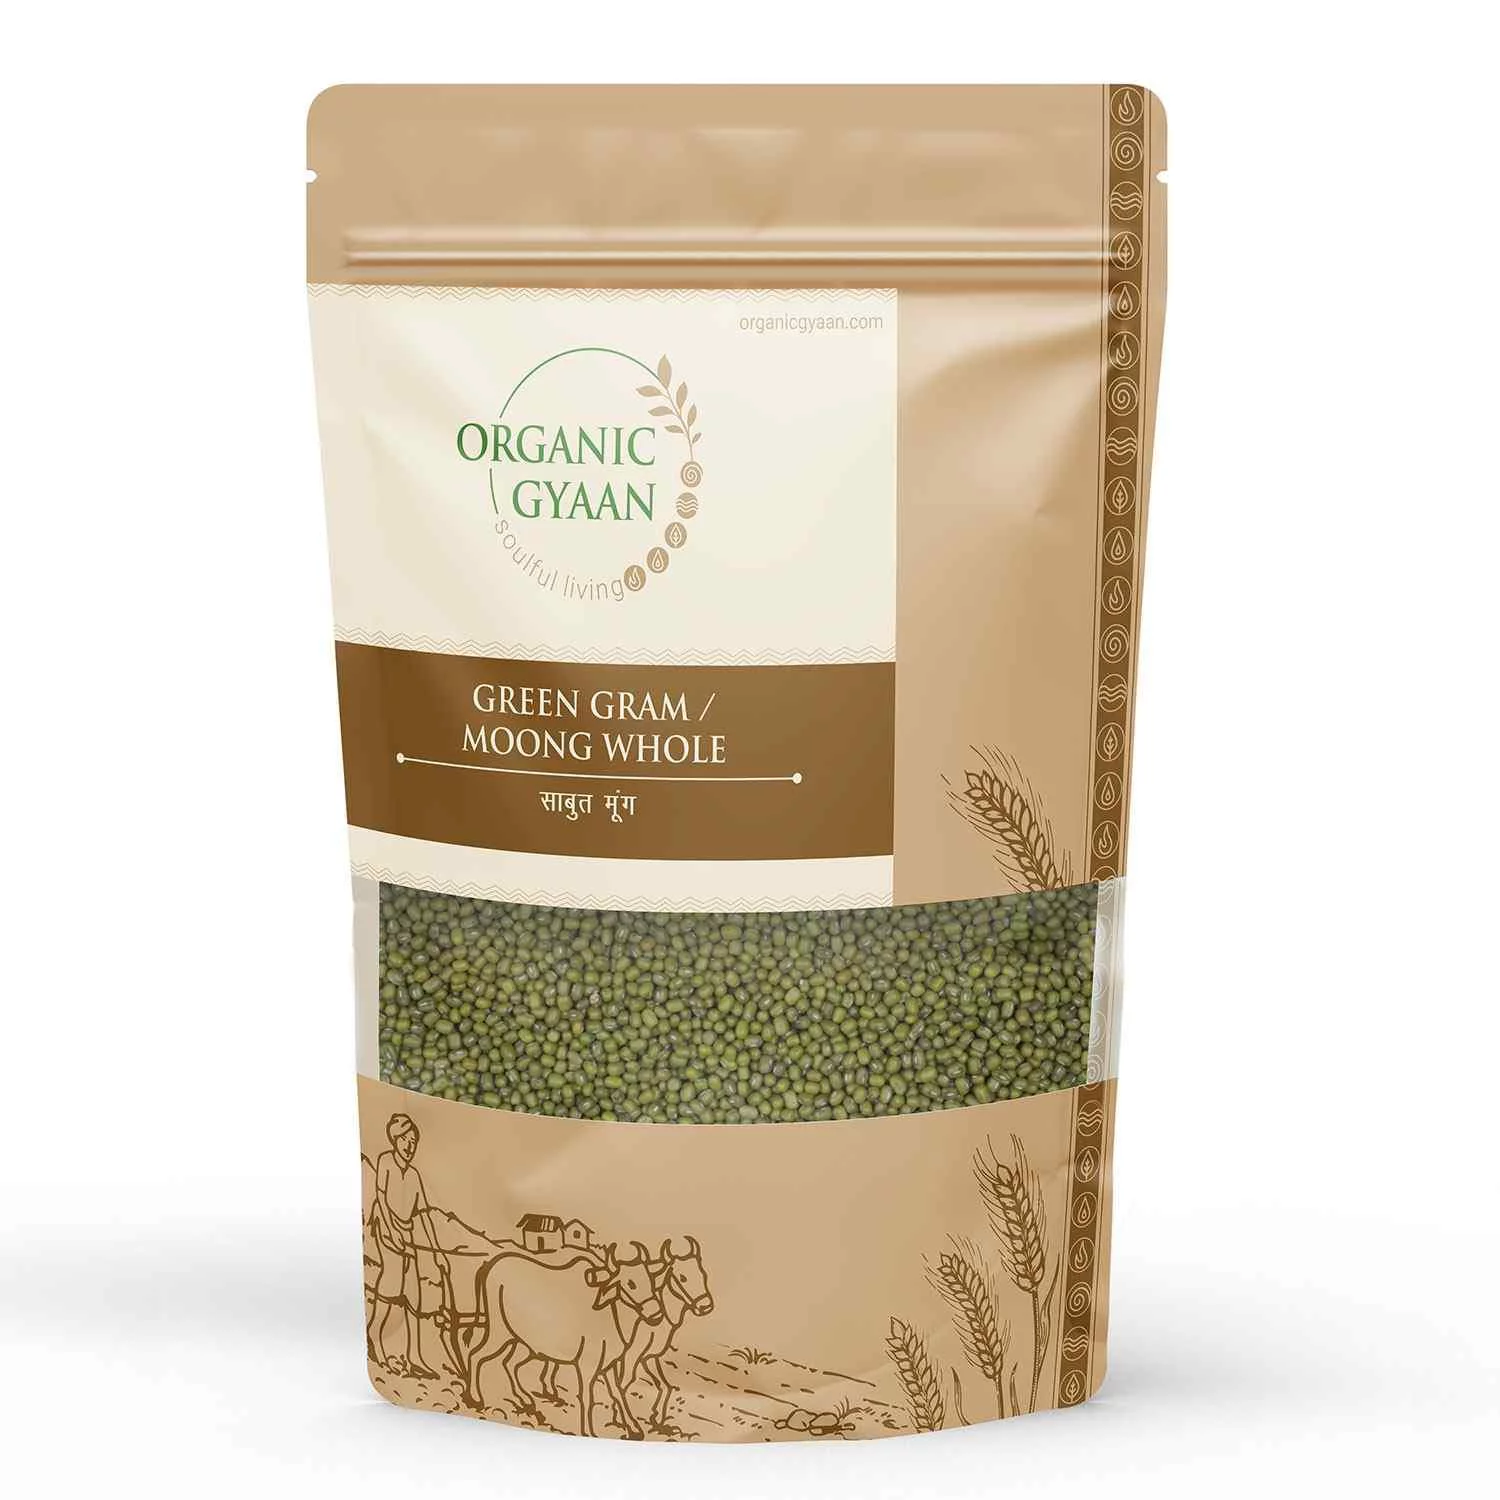 Organic Gyaan Organic Green Gram / Moong Whole (900 gms)